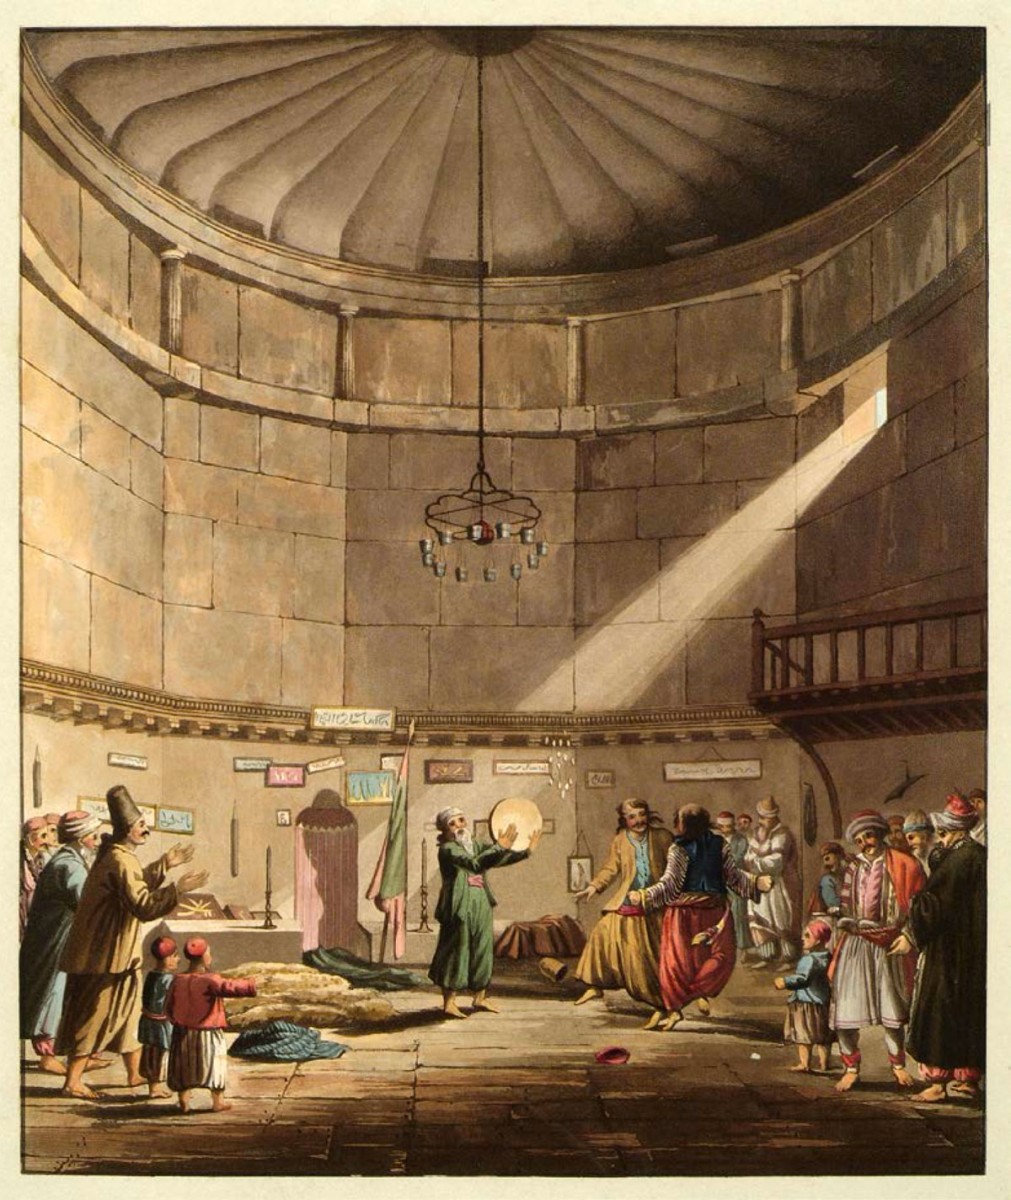 Ο χορός των δερβίσηδων στον πύργο των Ανέμων. Επιχρωματισμένη χαλκογραφία του Edward Dodwell από το βιβλίο του «Views in Greece» (Λονδίνο, 1819).